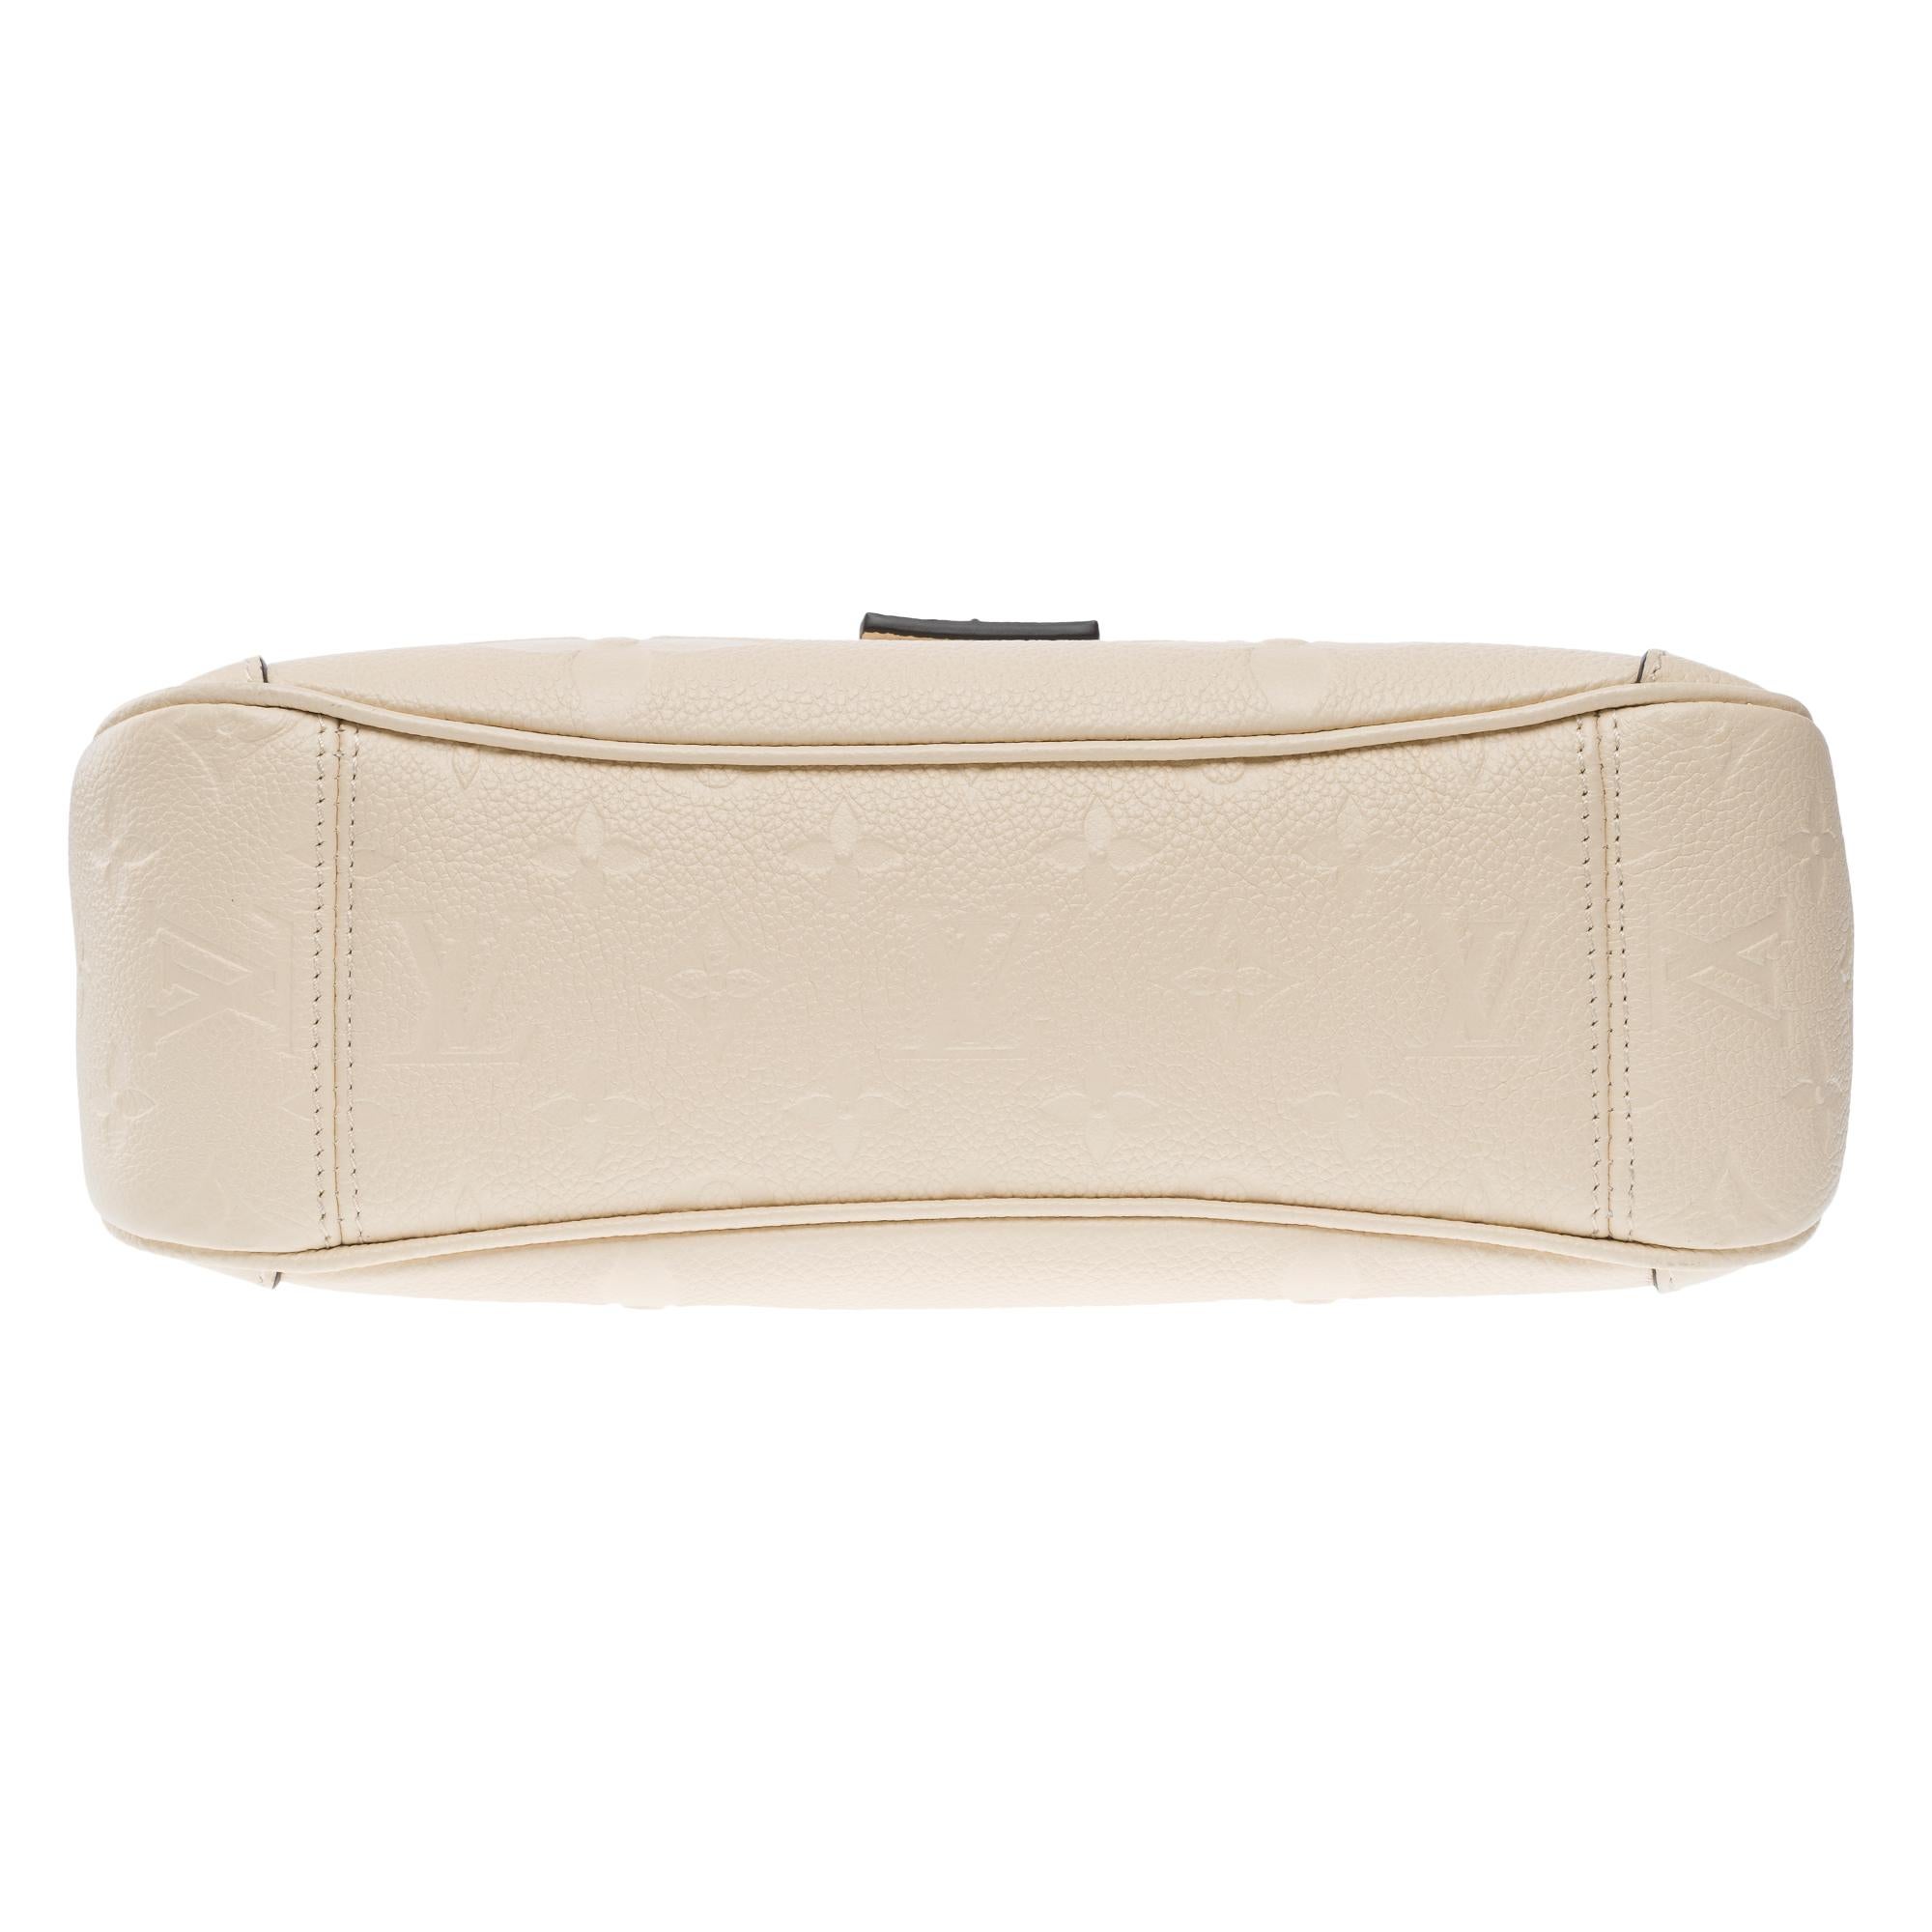 Louis Vuitton Trianon PM handbag strap in Cream White monogram calf leather, GHW For Sale 6